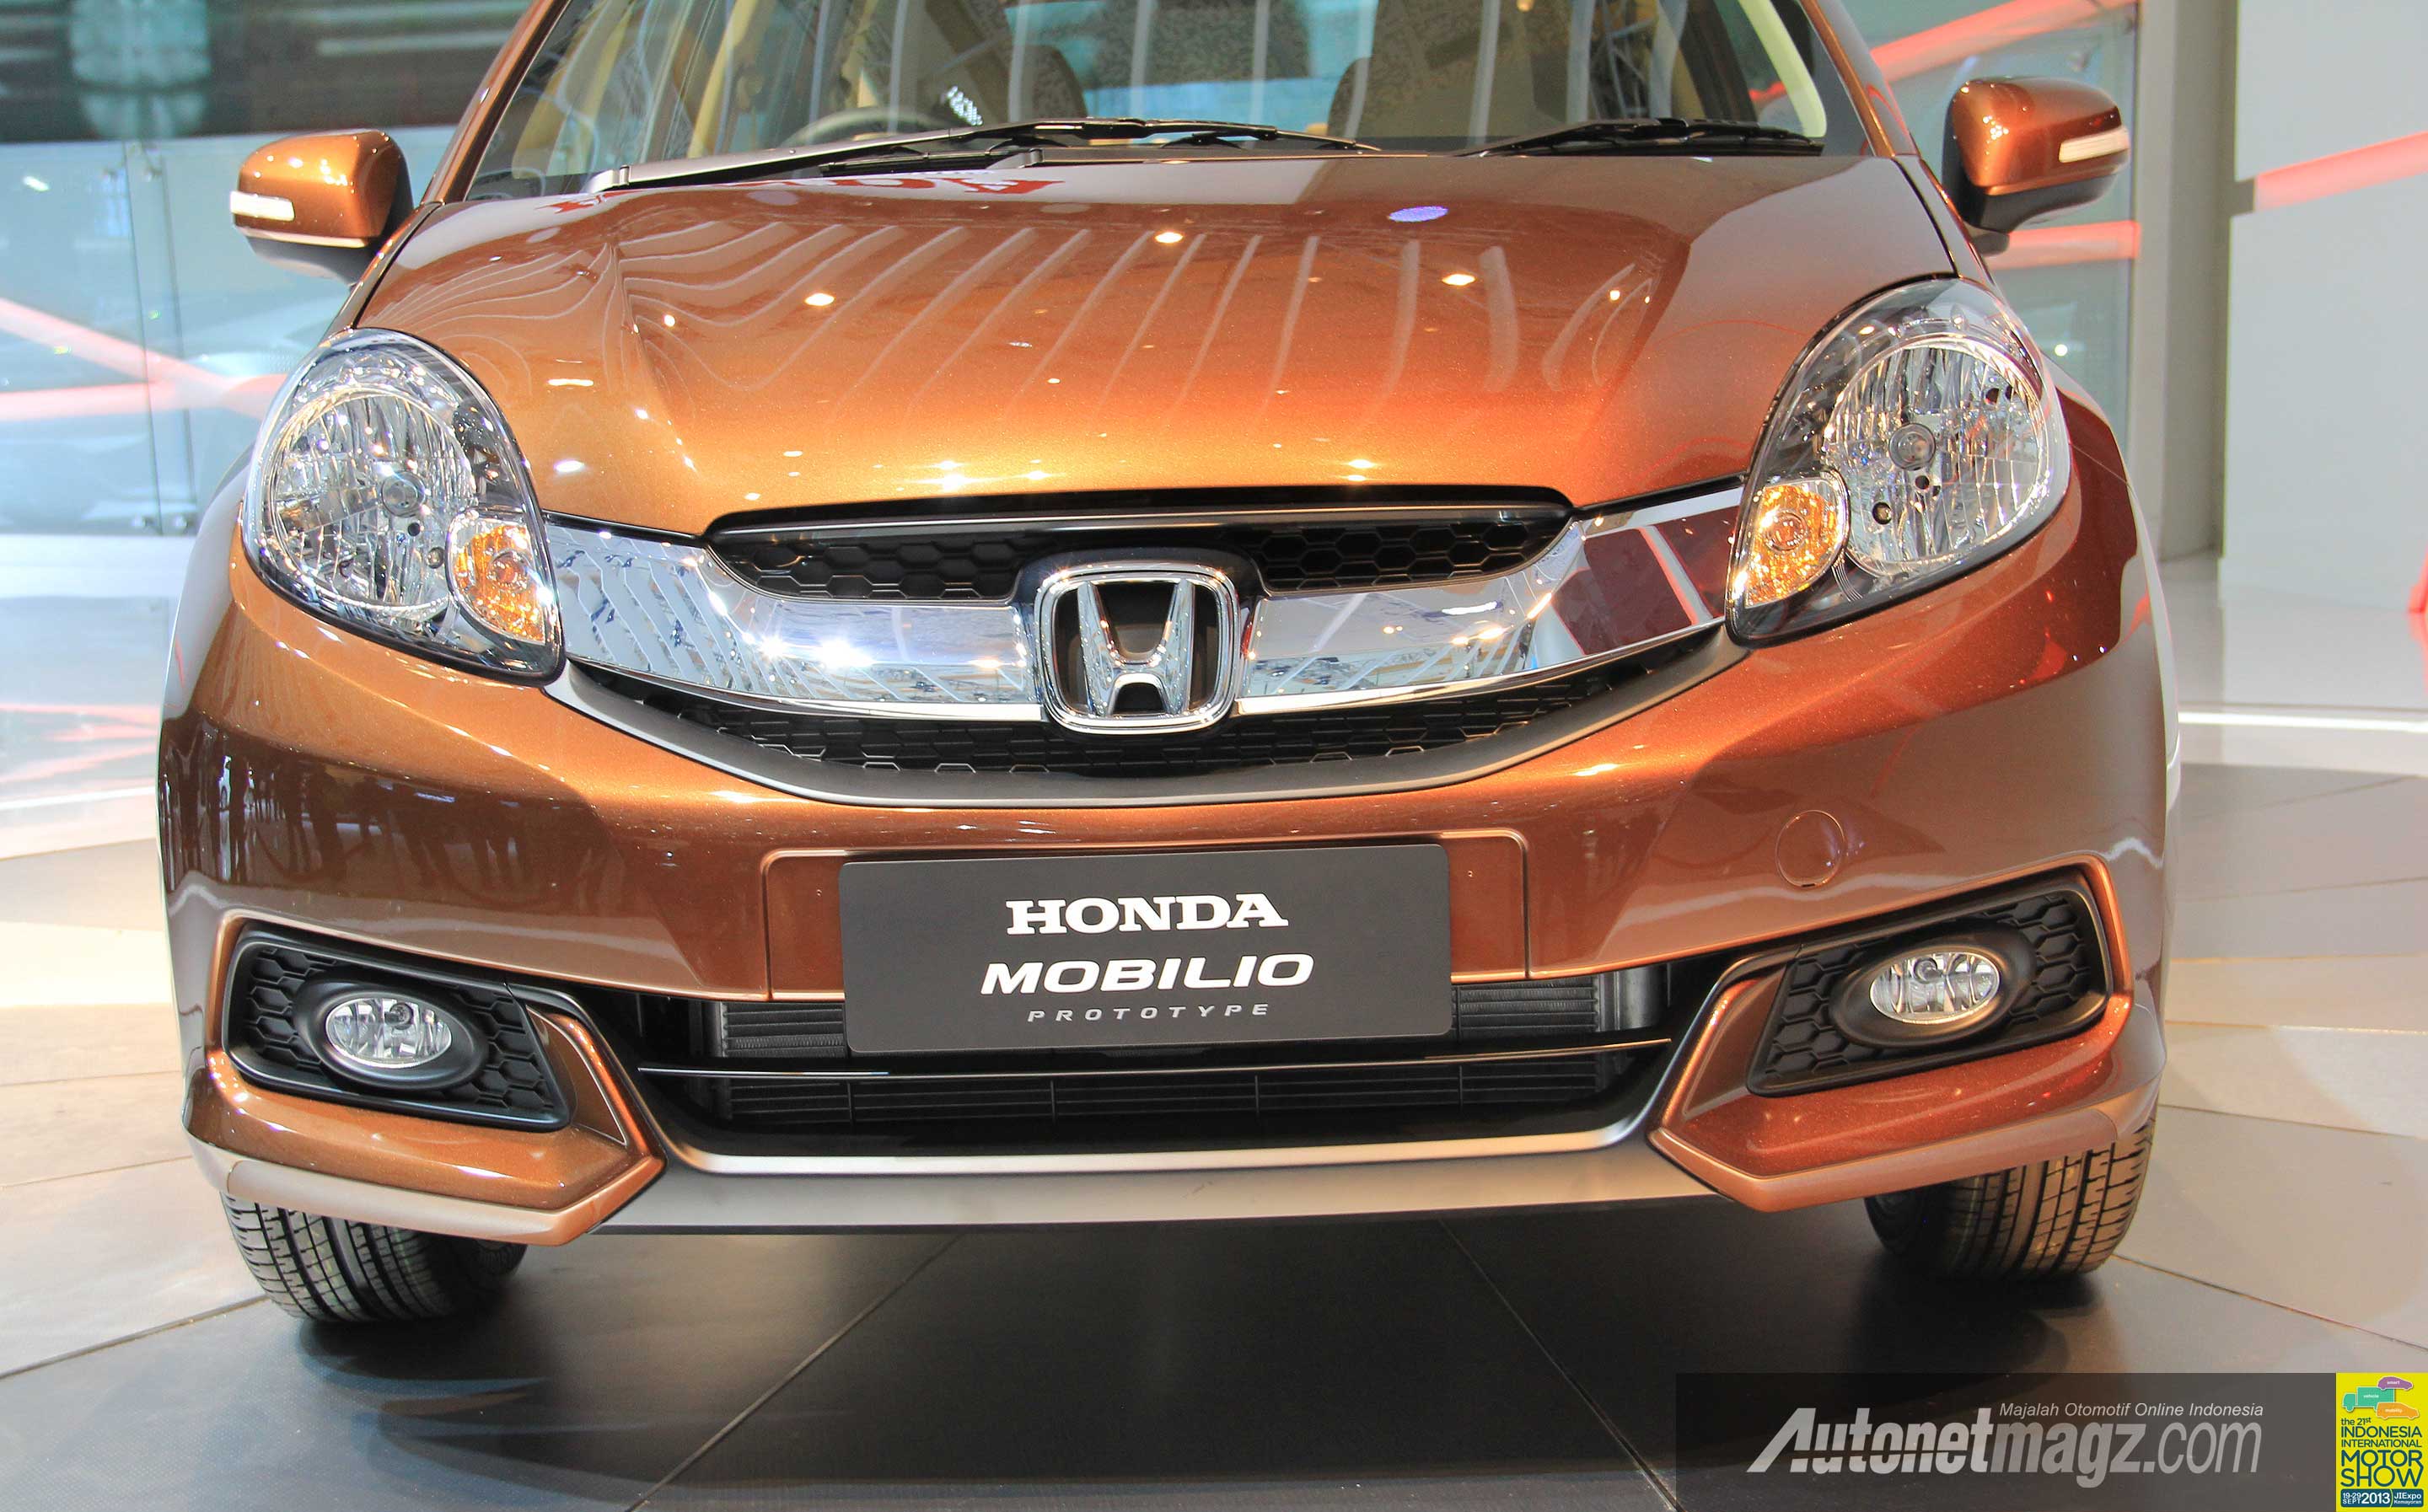 Honda, Harga Honda Mobilio Indonesia: Honda Mobilio: Low MPV dari Honda Yang Diciptakan Khusus Untuk Indonesia